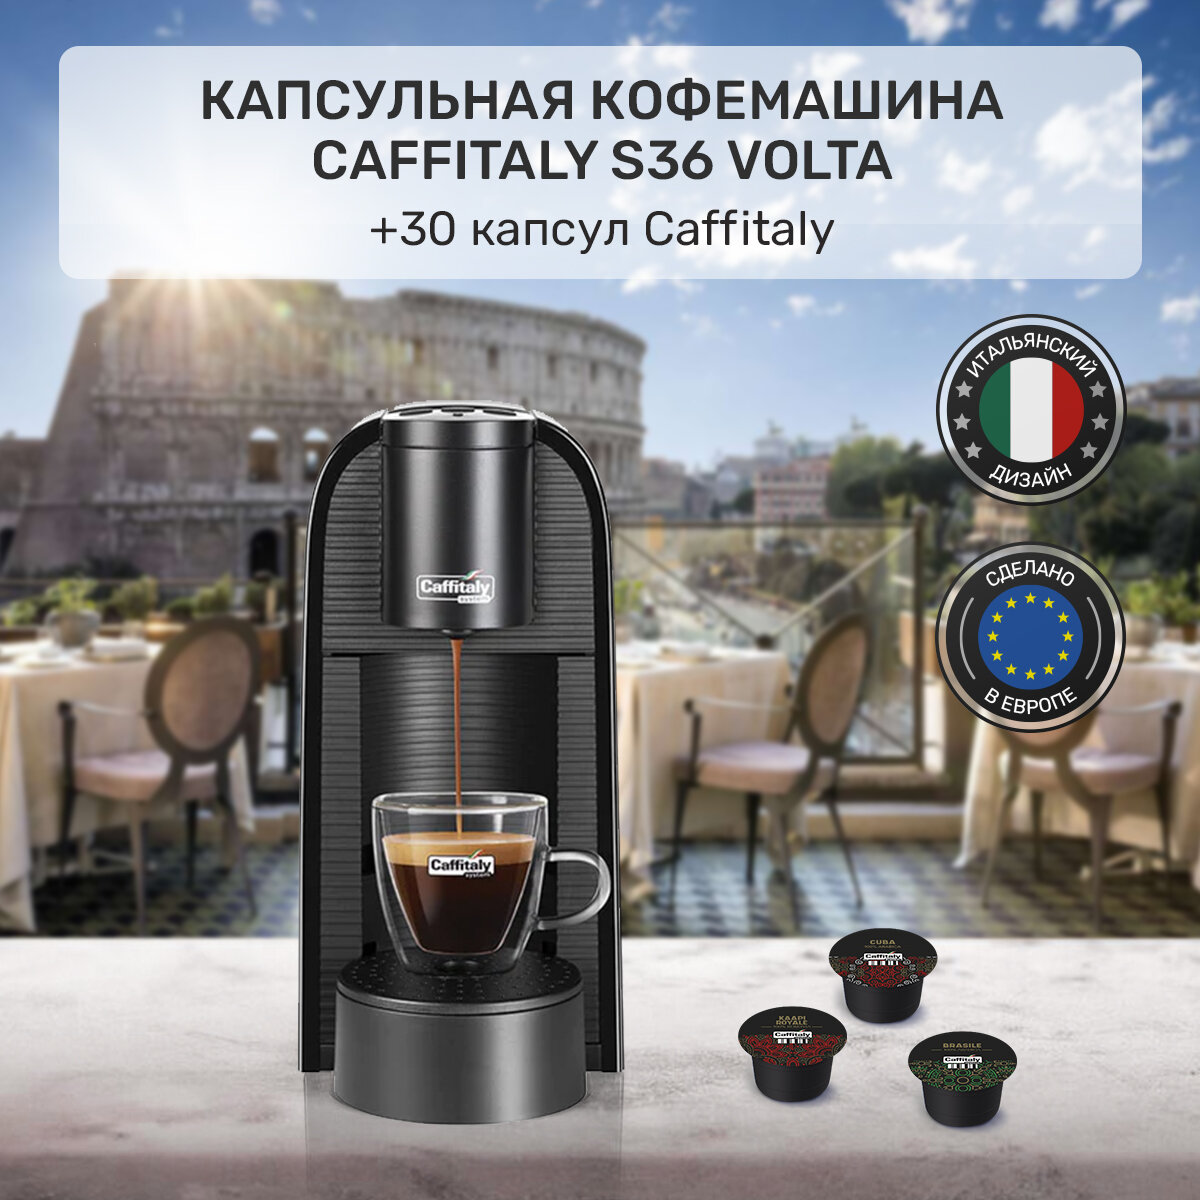 Набор Кофемашина капсульная Volta S36 кофеварка (черная) + 30 капсул кофе